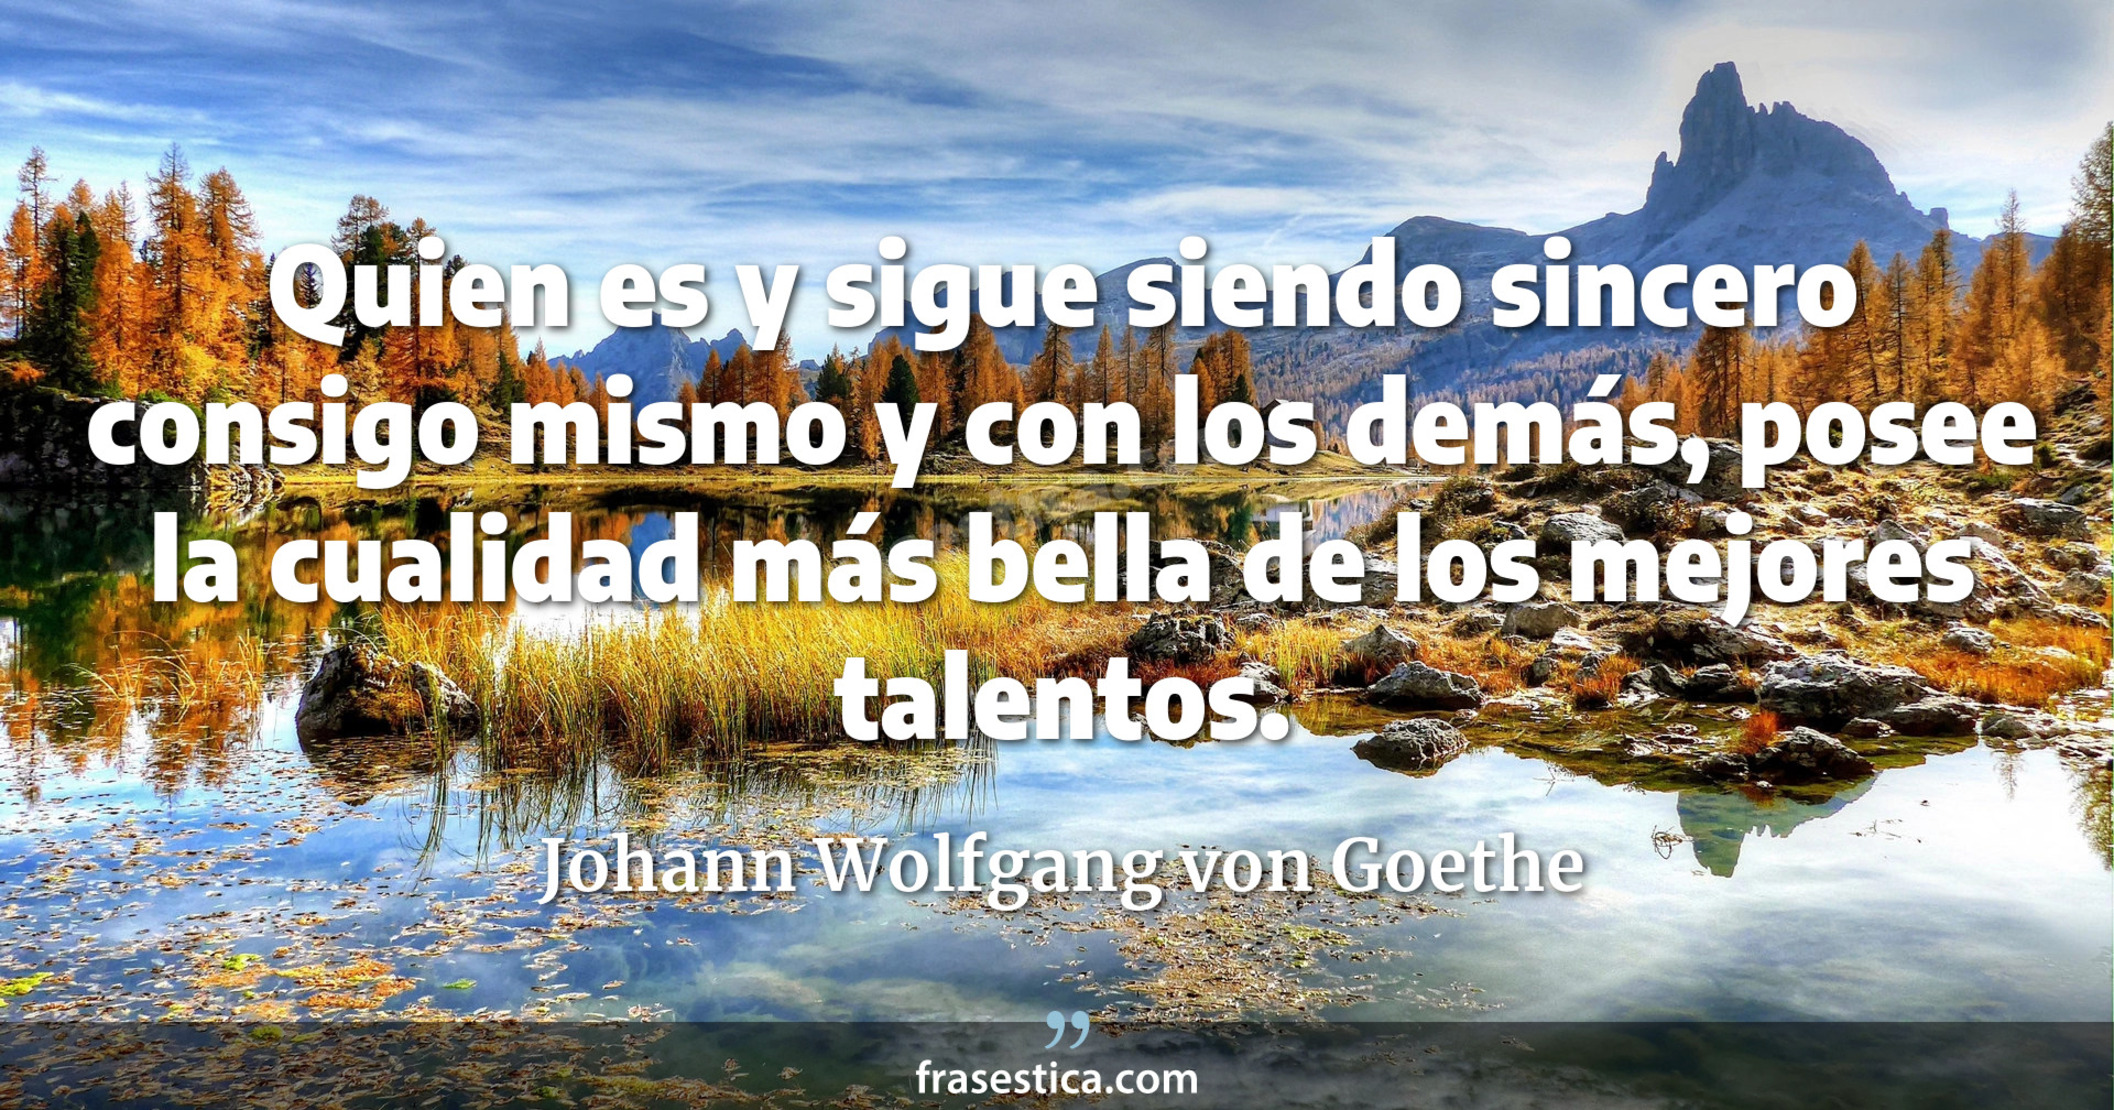 Quien es y sigue siendo sincero consigo mismo y con los demás, posee la cualidad más bella de los mejores talentos. - Johann Wolfgang von Goethe